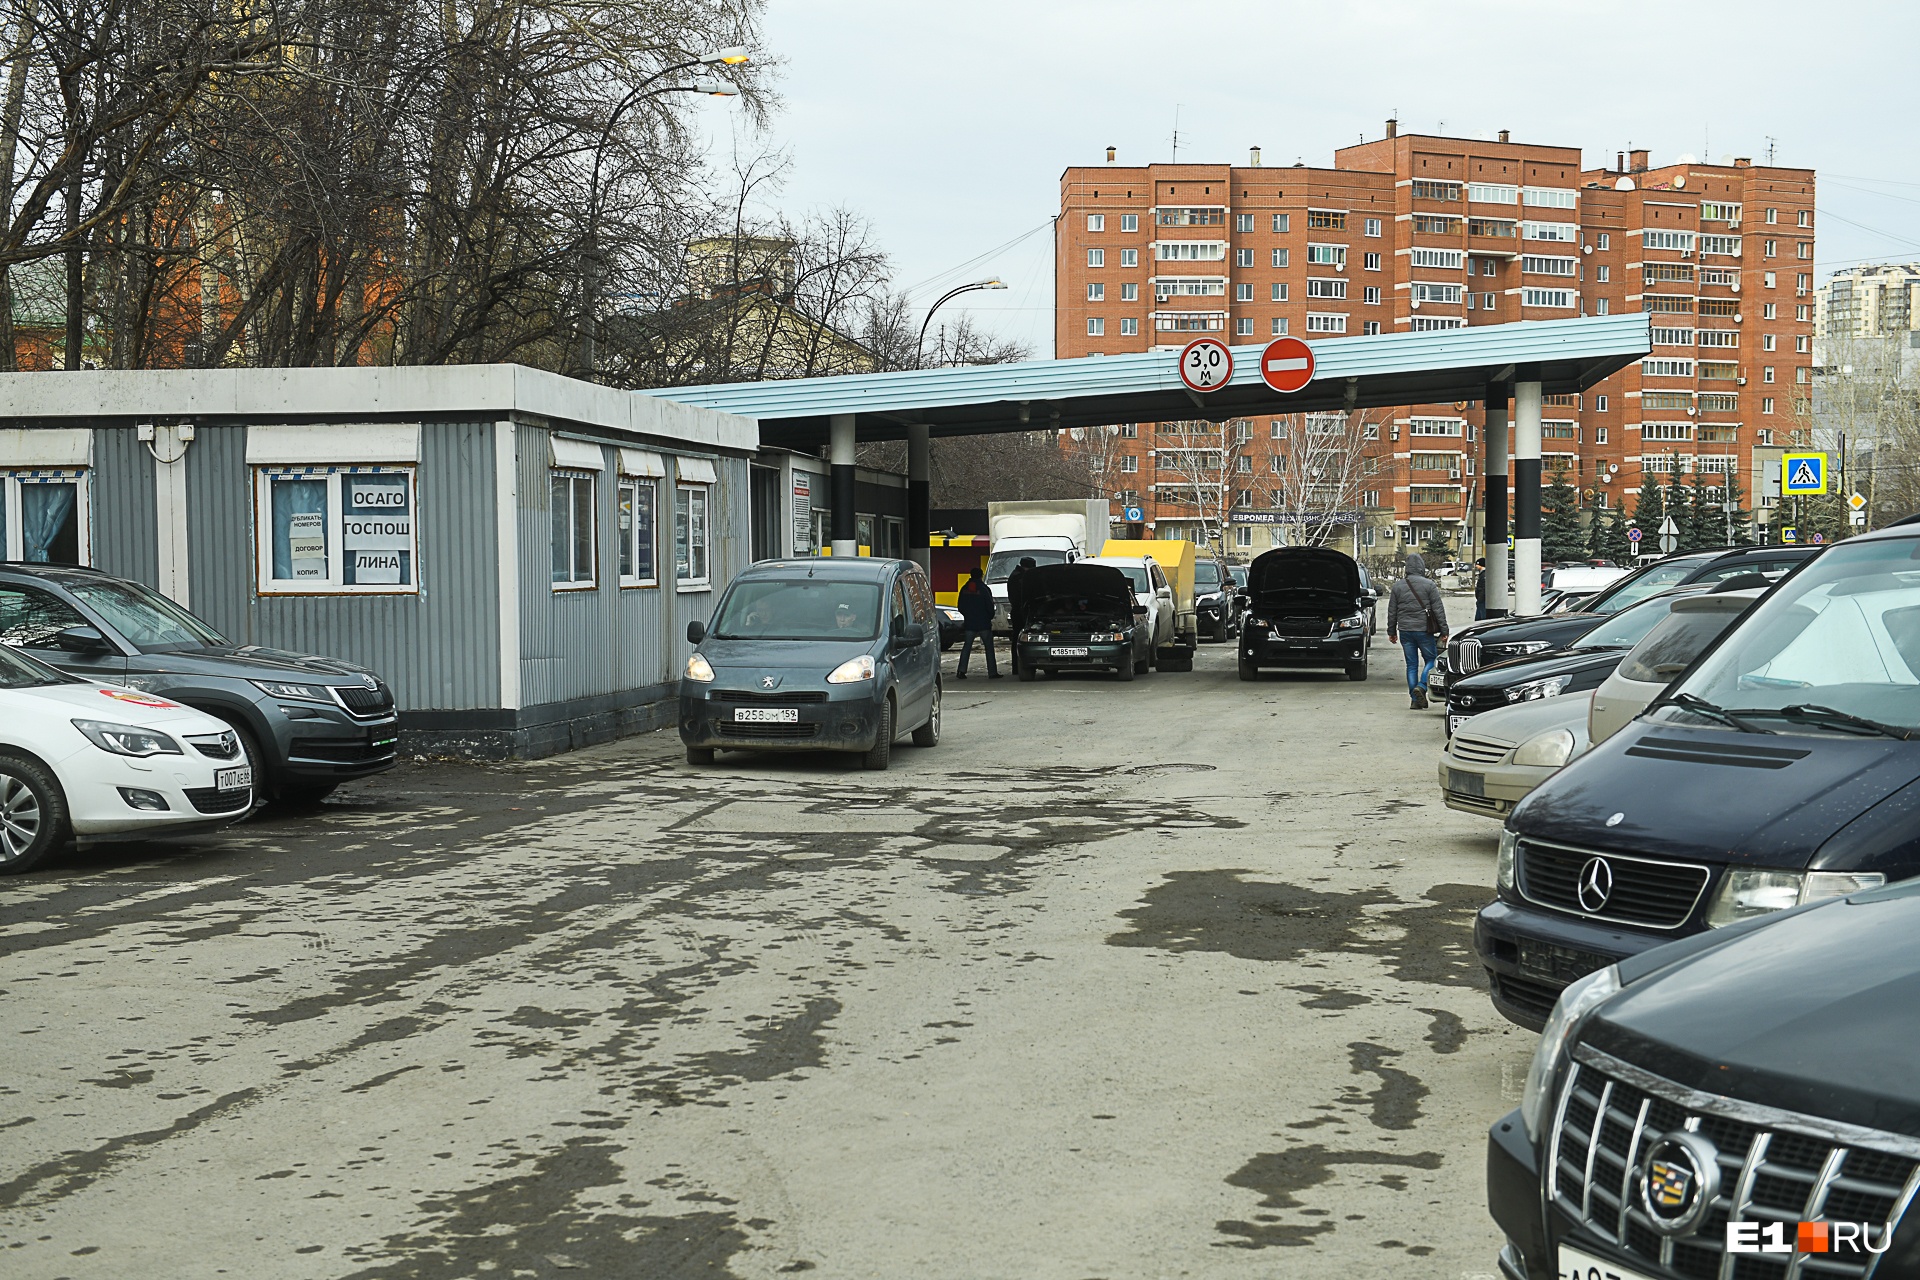 В Екатеринбурге решили закрыть главный пункт выдачи автономеров. Прокуратуру попросили вмешаться